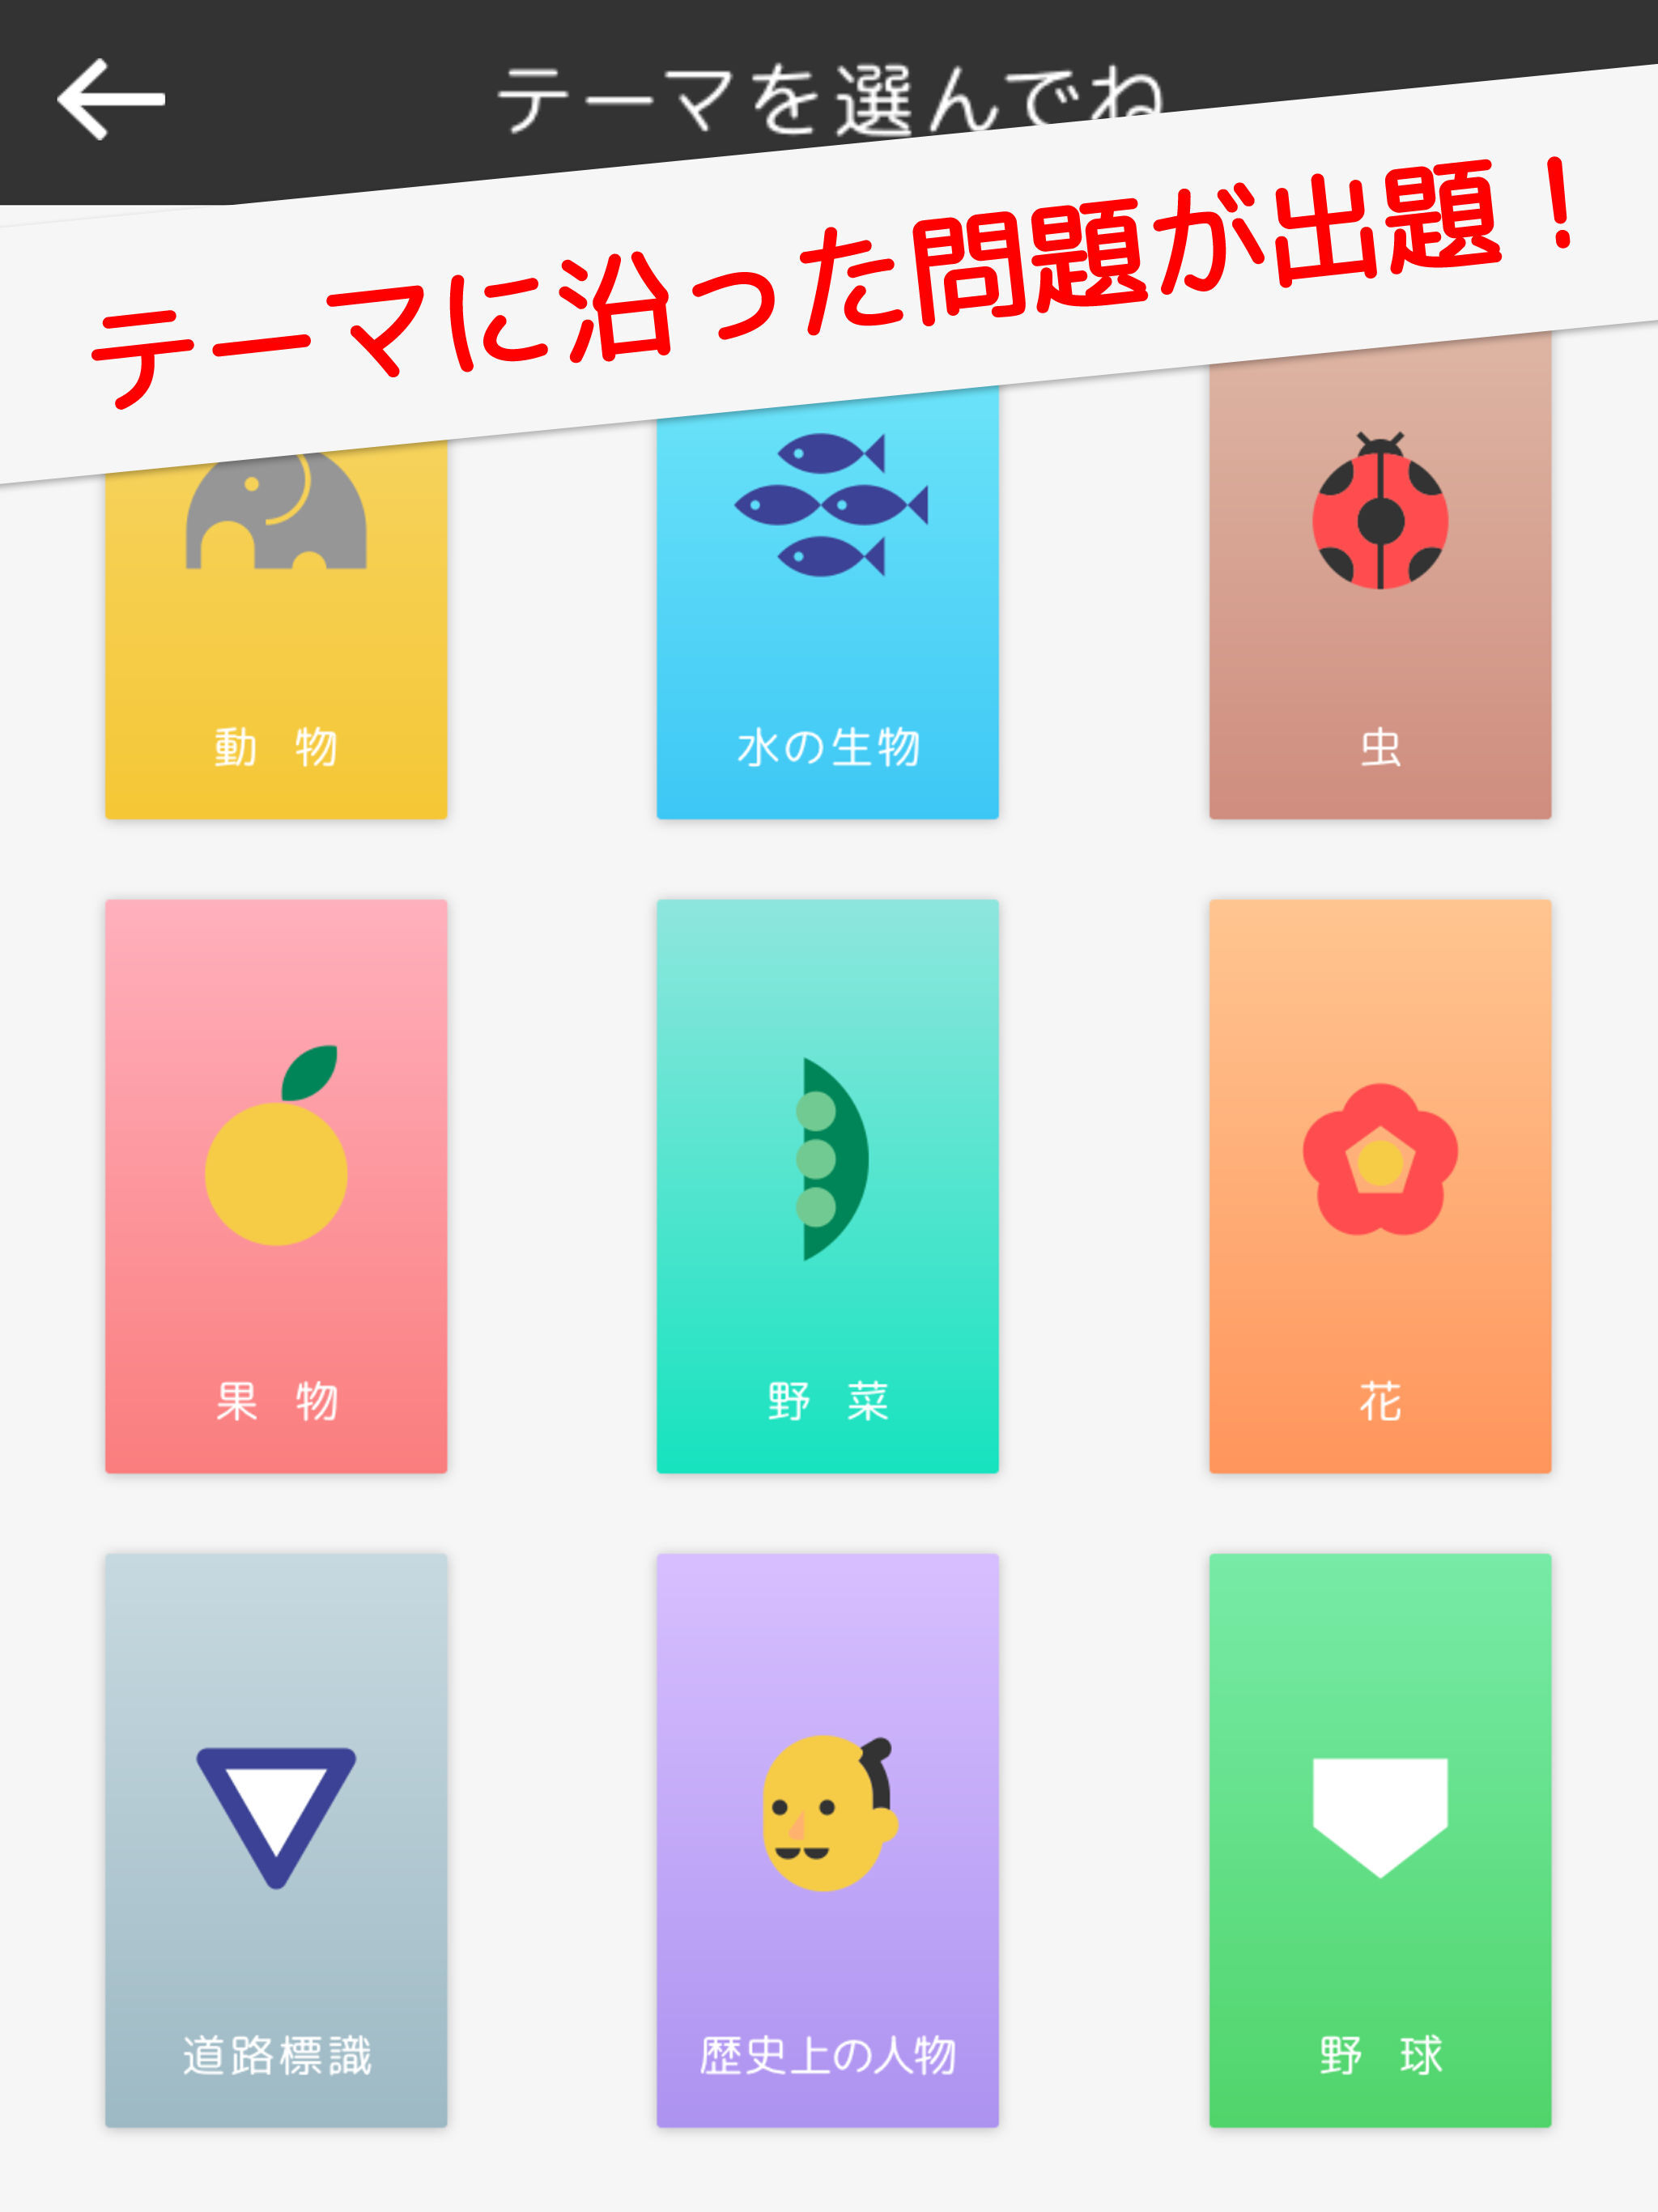 小学生からの難読漢字 100万ダウンロードを突破した学習アプリの続編を配信 動物や歴史など興味のあるジャンルだから勉強がすすむ Nextbook株式会社のプレスリリース